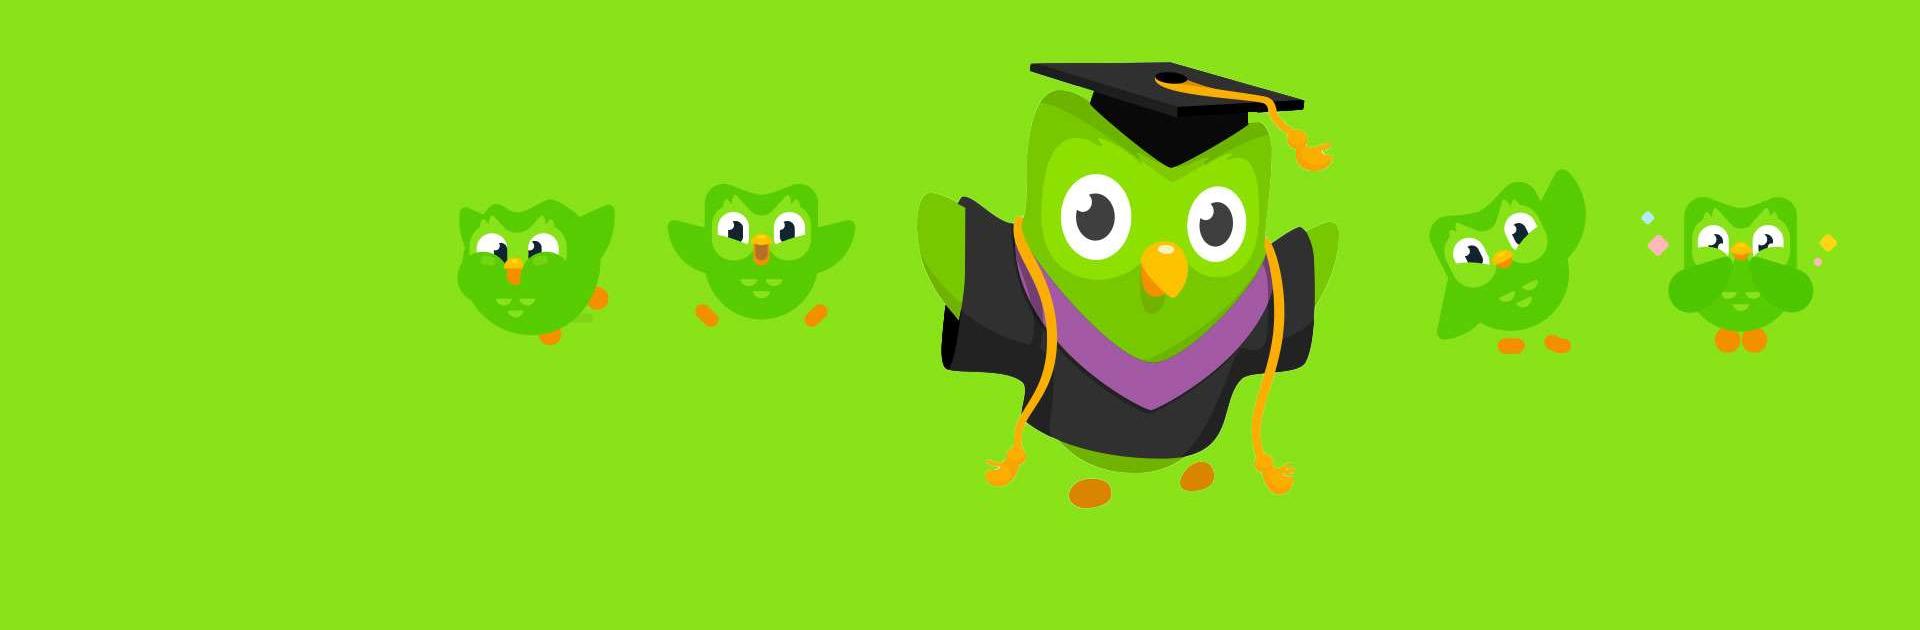 Duolingo: เรียนภาษาอังกฤษ